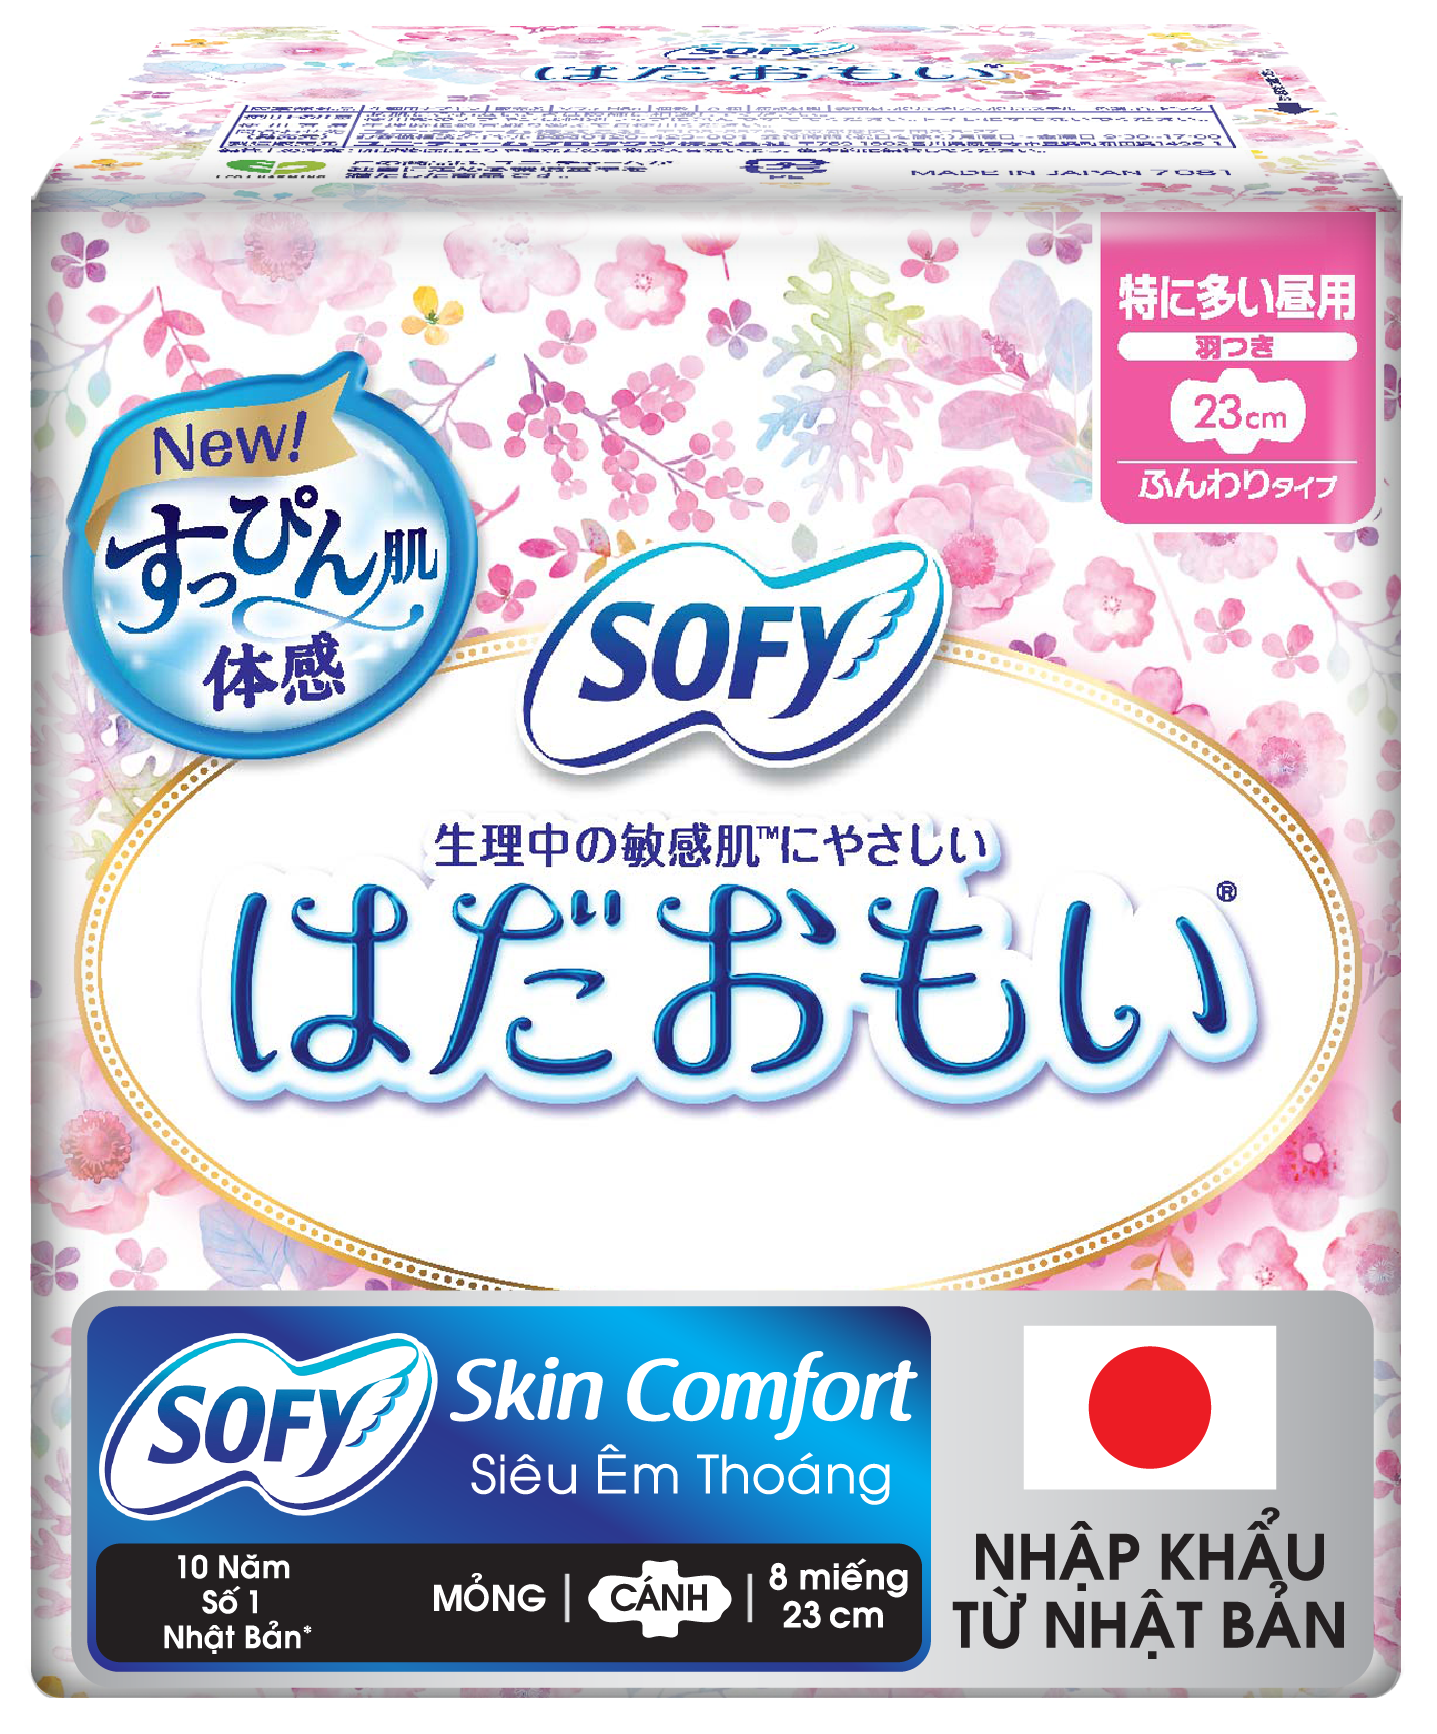 SOFY Skin Comfort 23cm